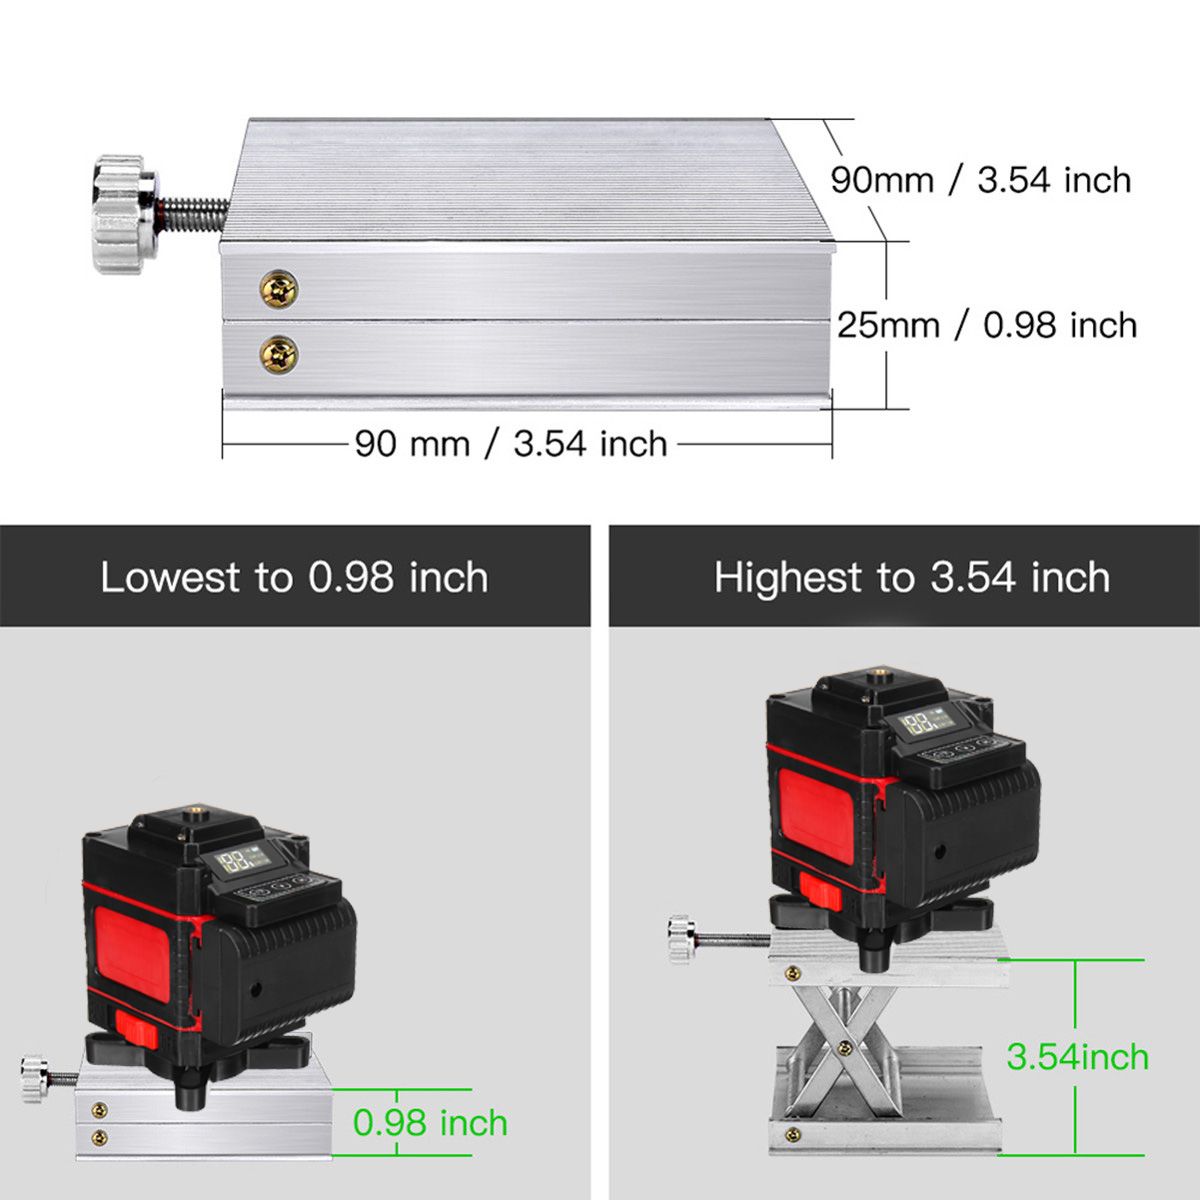 4D-1216-Line-Green-Light-Laser-Level-Digital-Self-Leveling-360deg-Rotary-Measure-1717894